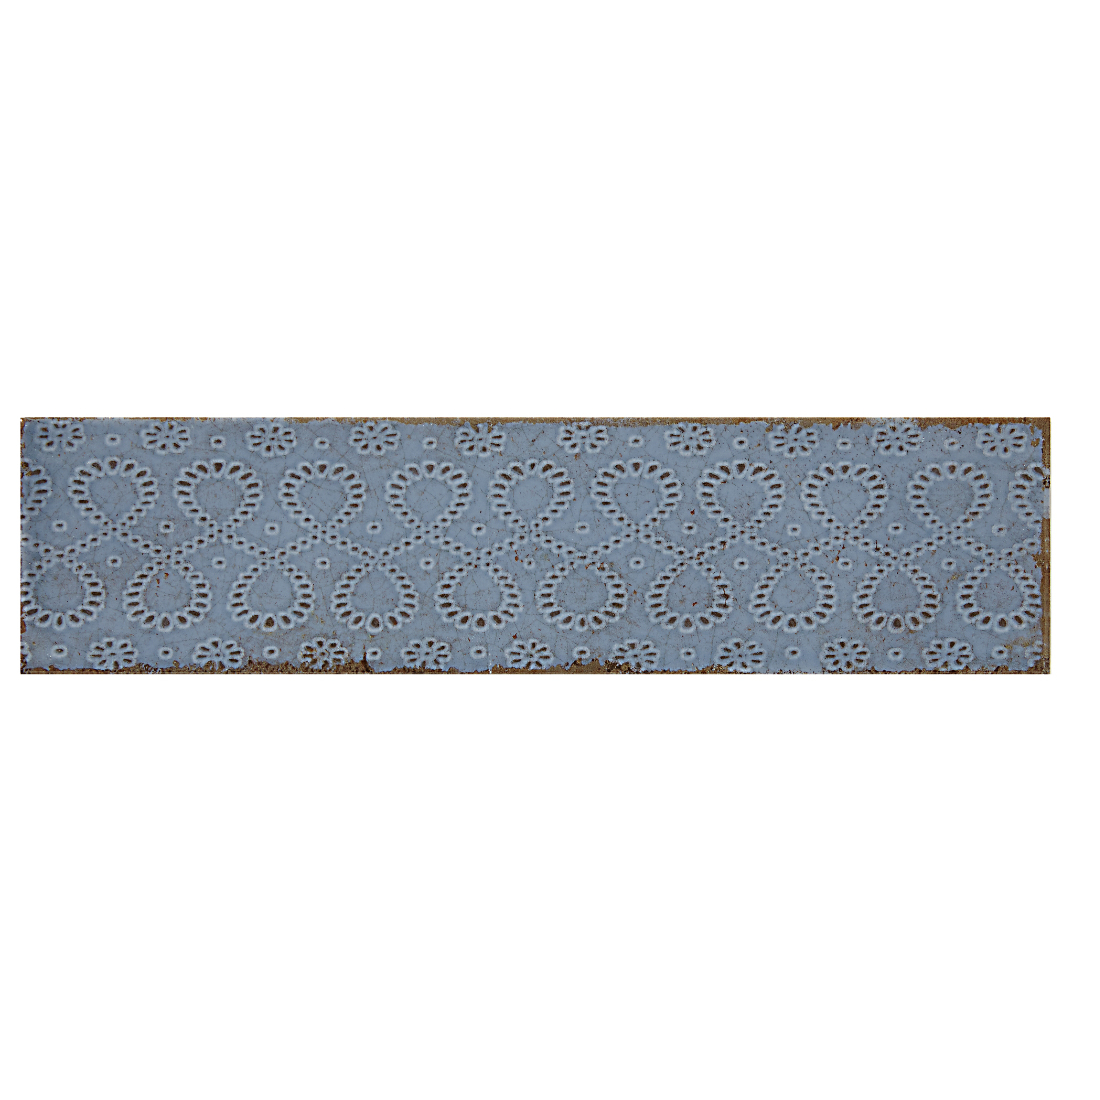 A. Selke Art. Smokey Blue Lace7.5x30cm